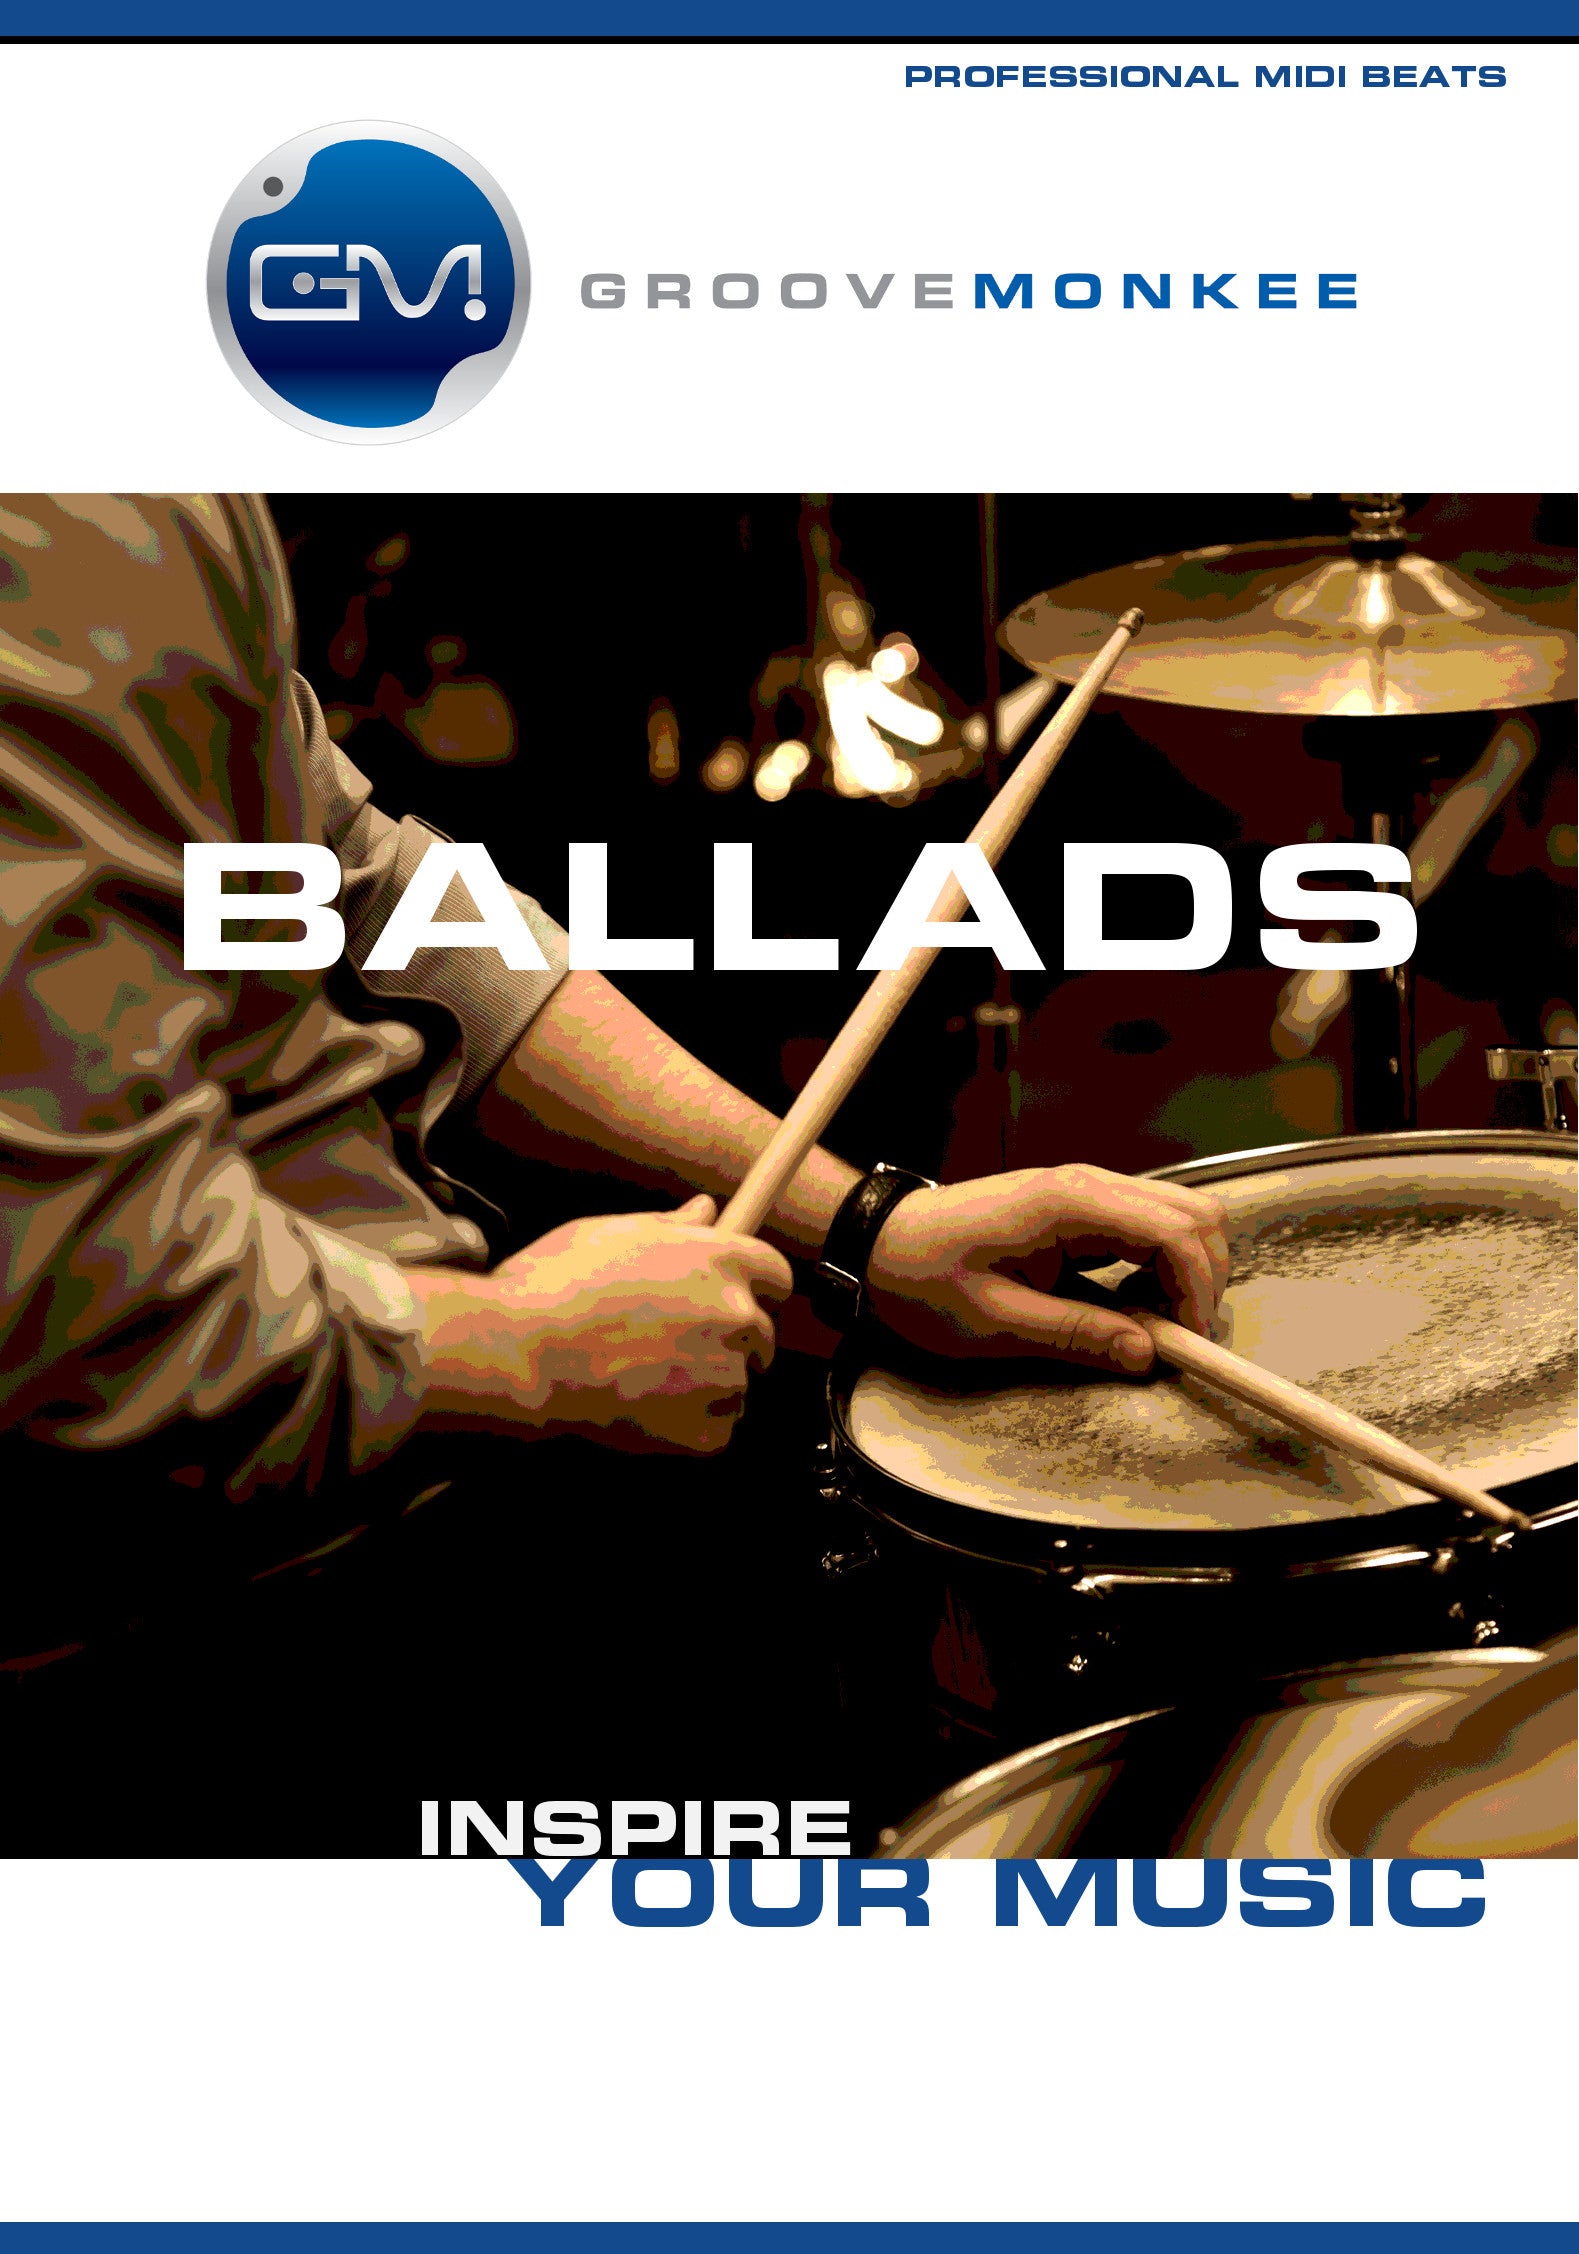 Ballad MIDI Drum Loops